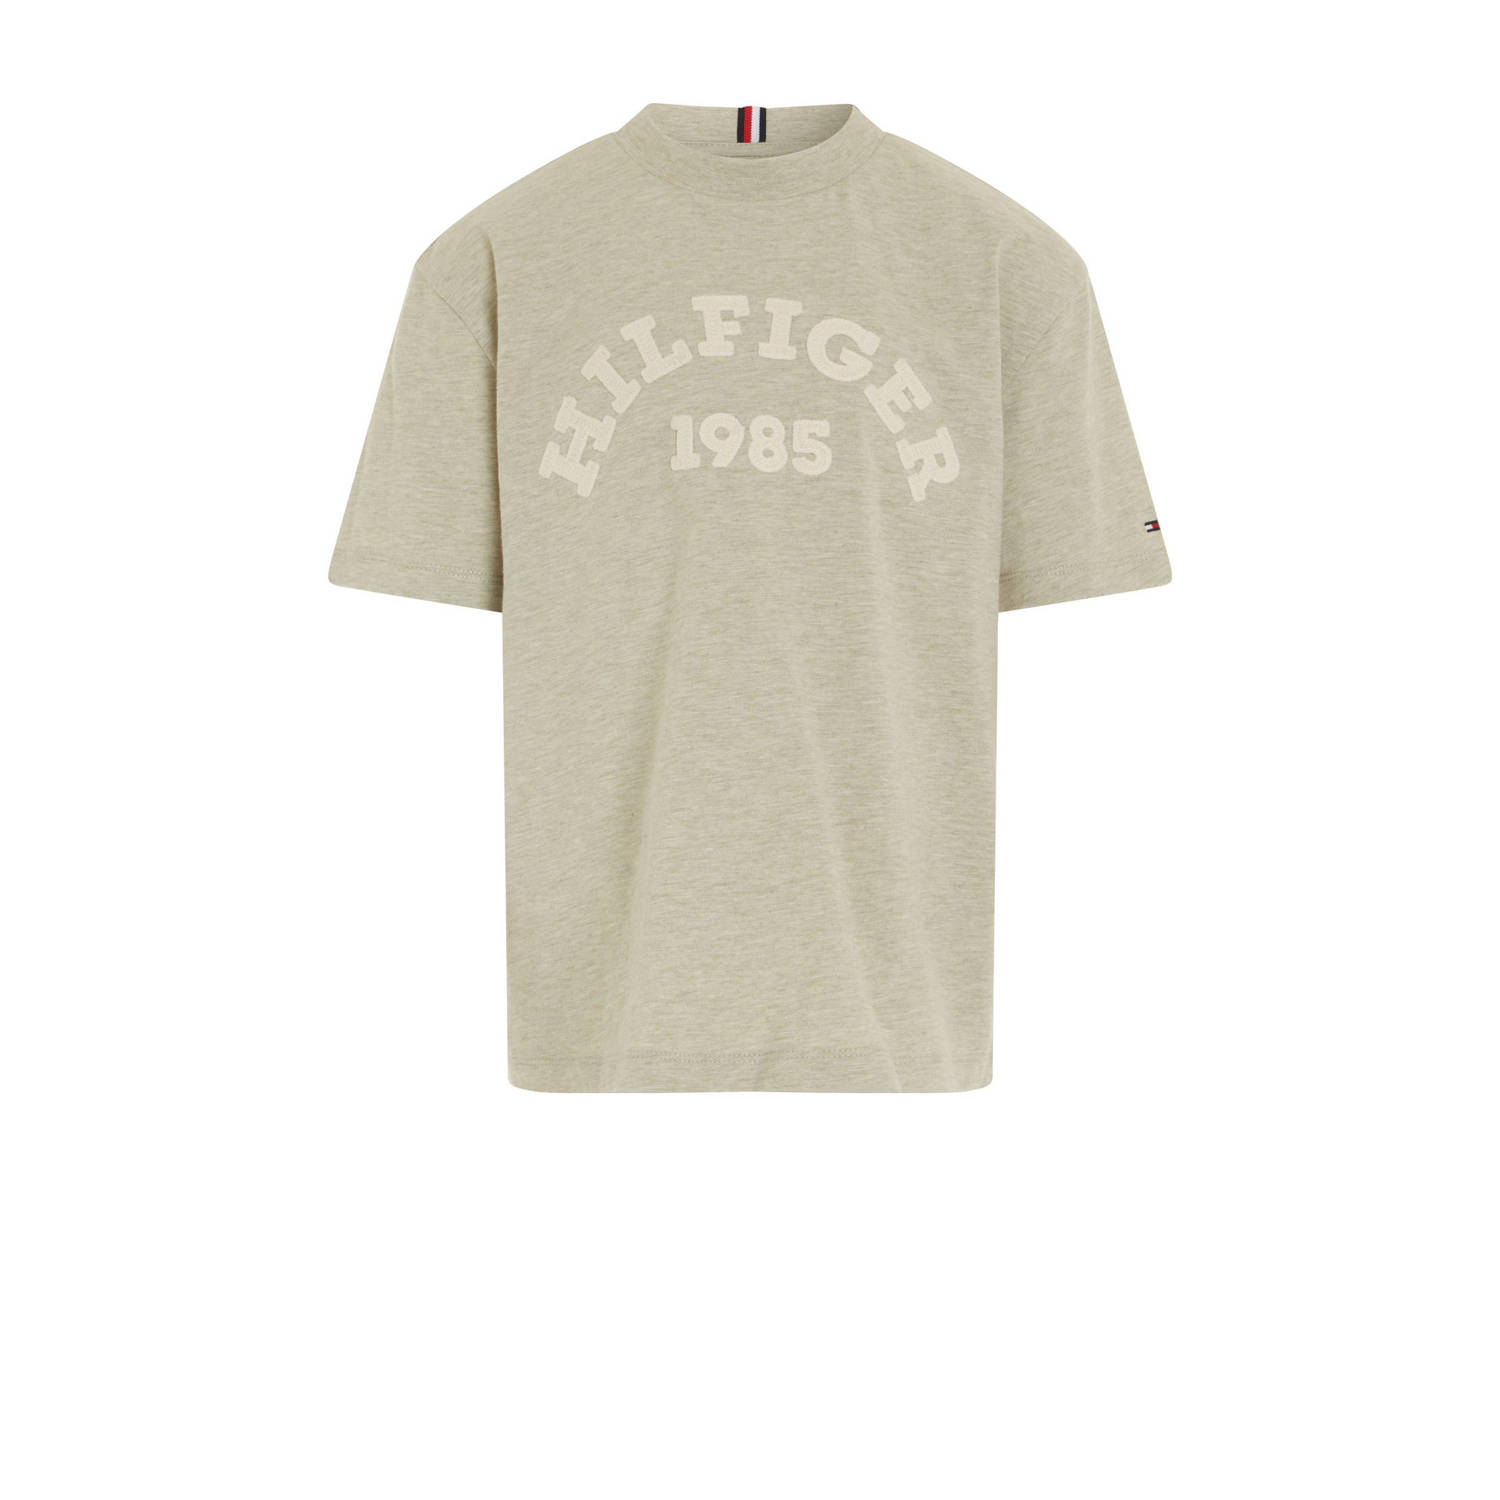 Tommy Hilfiger T-shirt met printopdruk olijfgroen Jongens Katoen Ronde hals 104